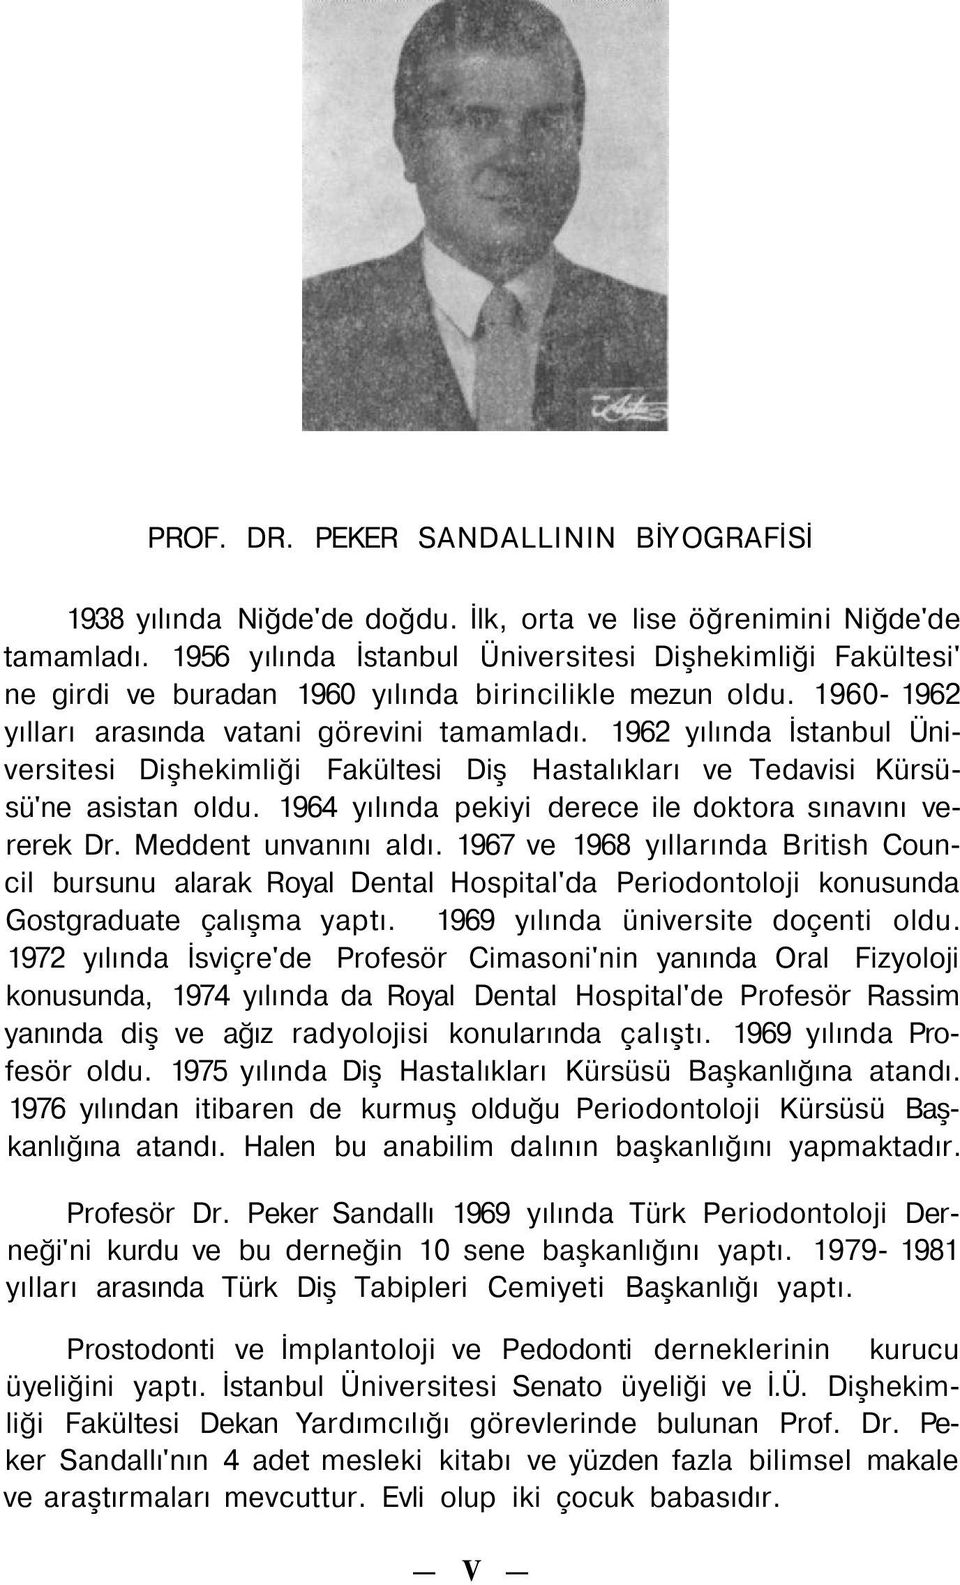 1962 yılında İstanbul Üniversitesi Dişhekimliği Fakültesi Diş Hastalıkları ve Tedavisi Kürsüsü'ne asistan oldu. 1964 yılında pekiyi derece ile doktora sınavını vererek Dr. Meddent unvanını aldı.